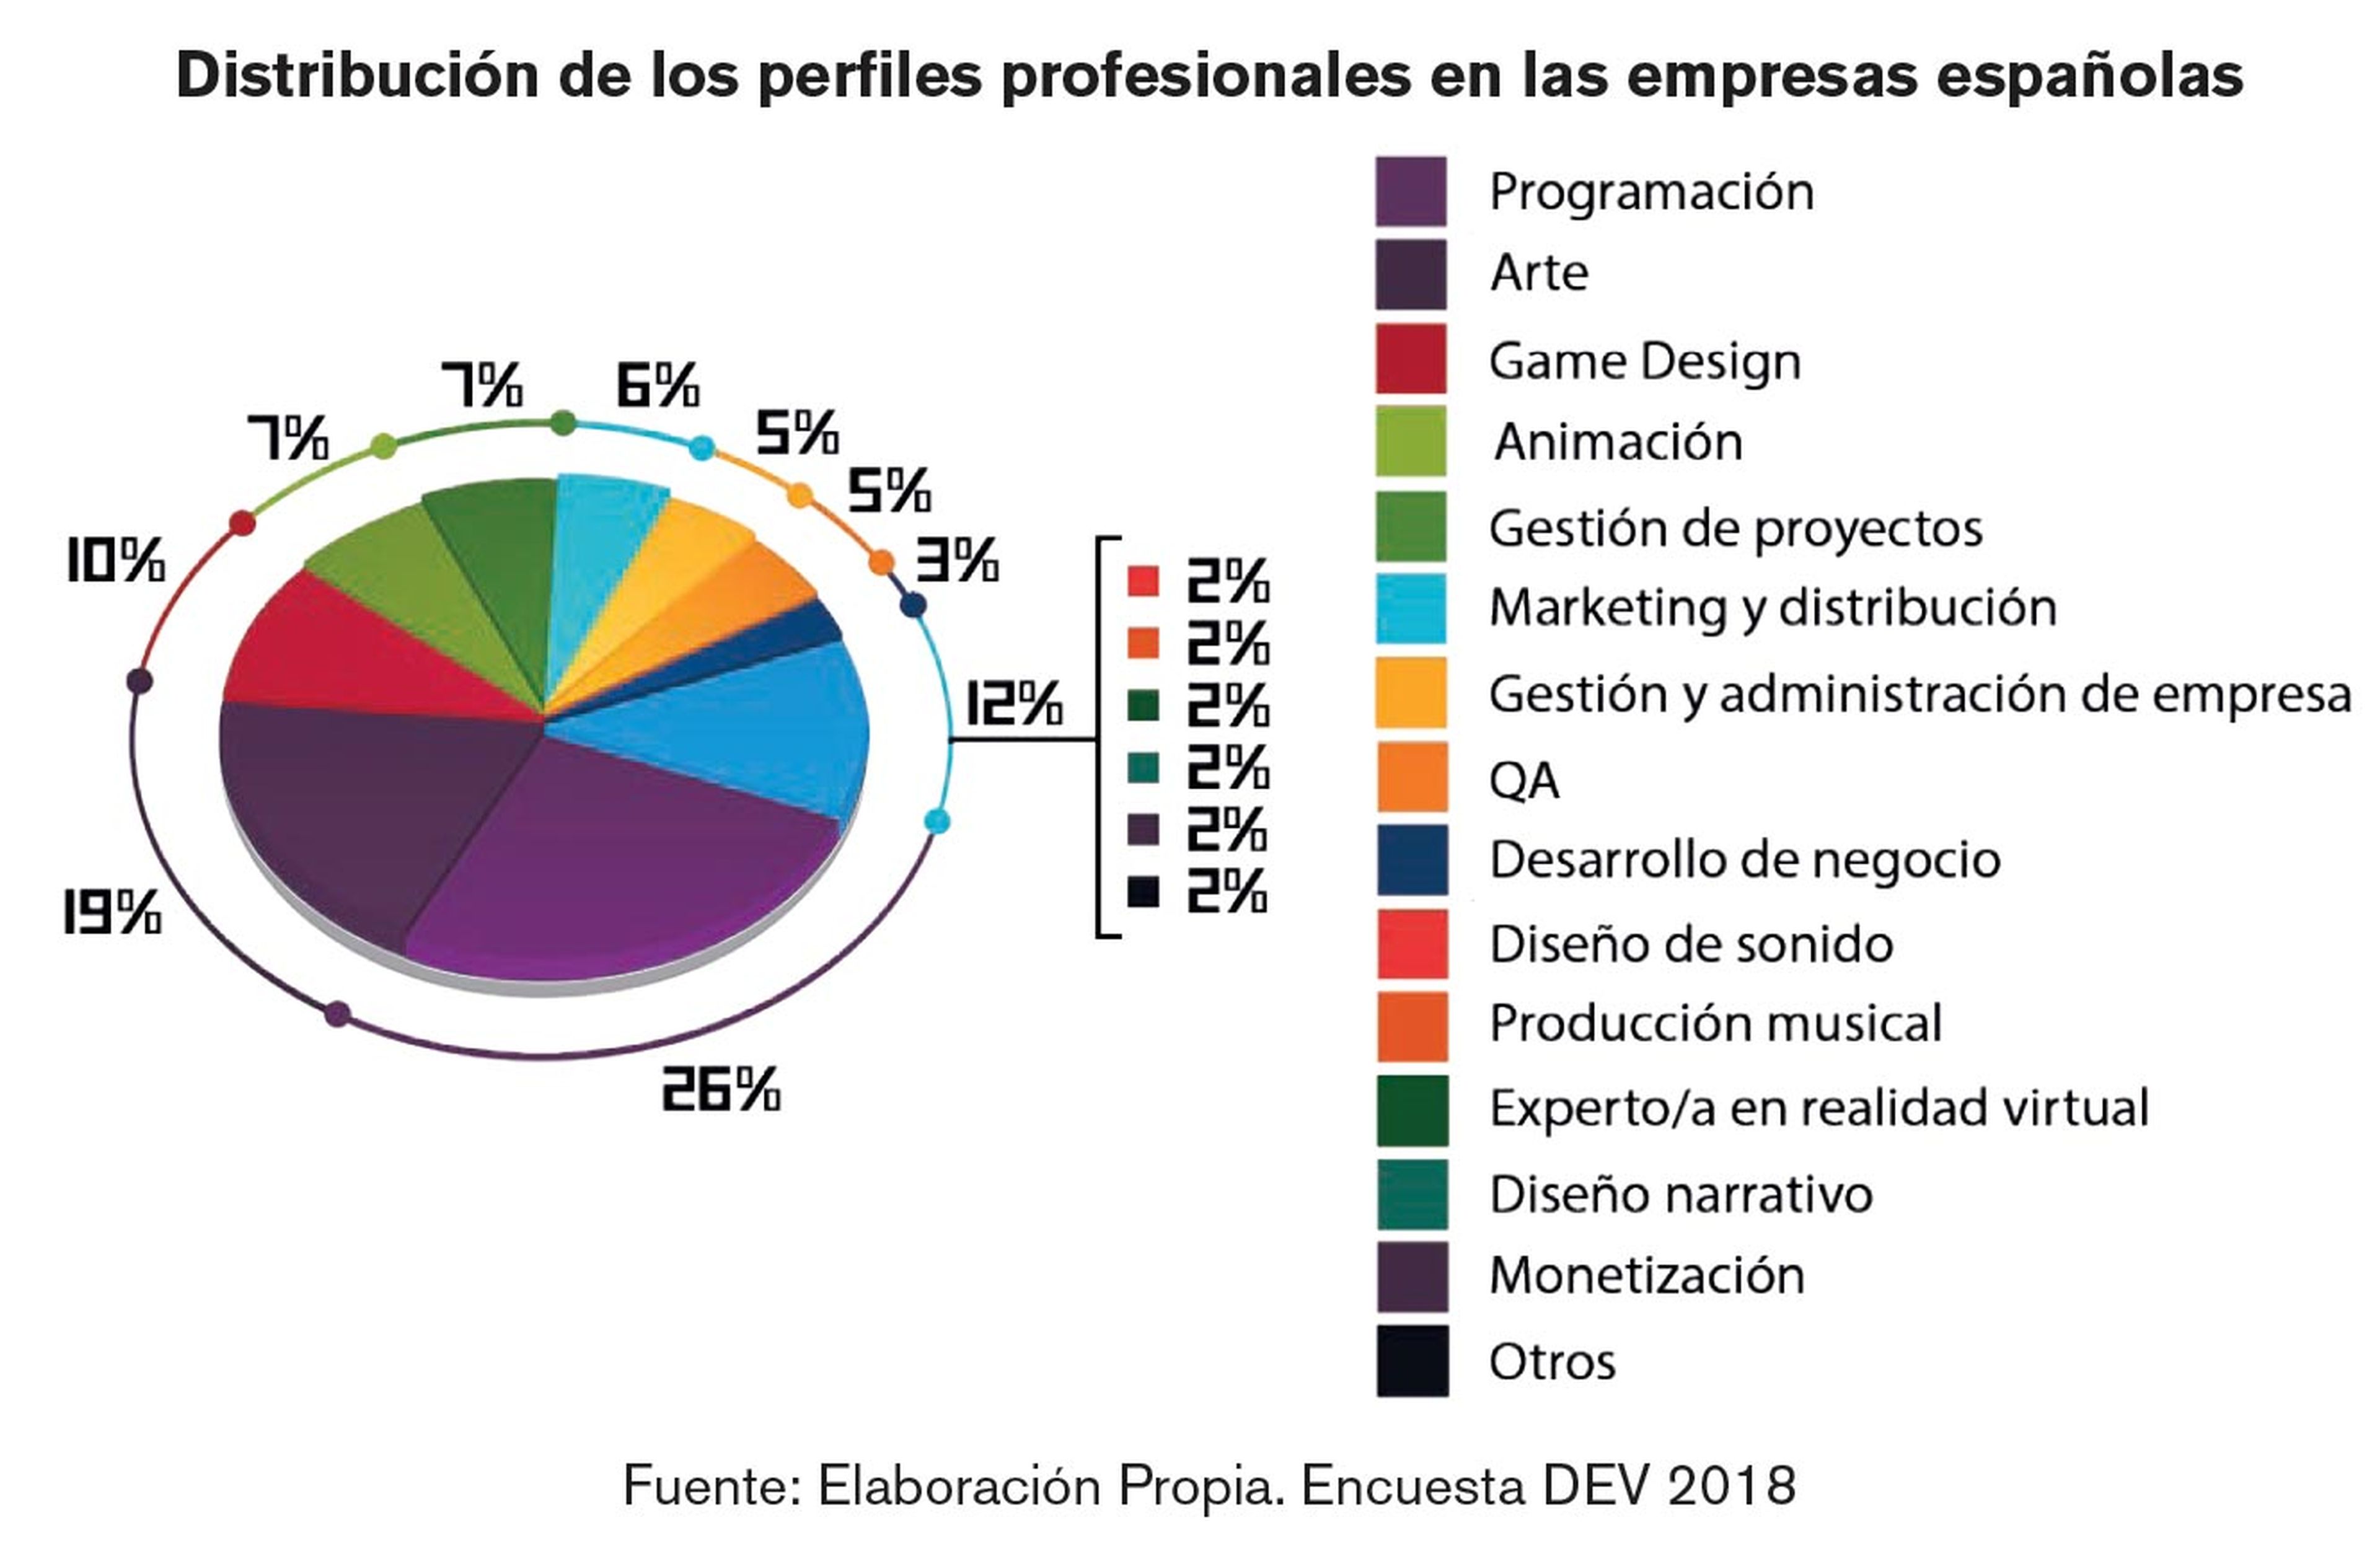 Perfiles profesionales en empresas españolas_DEV2018.jpg